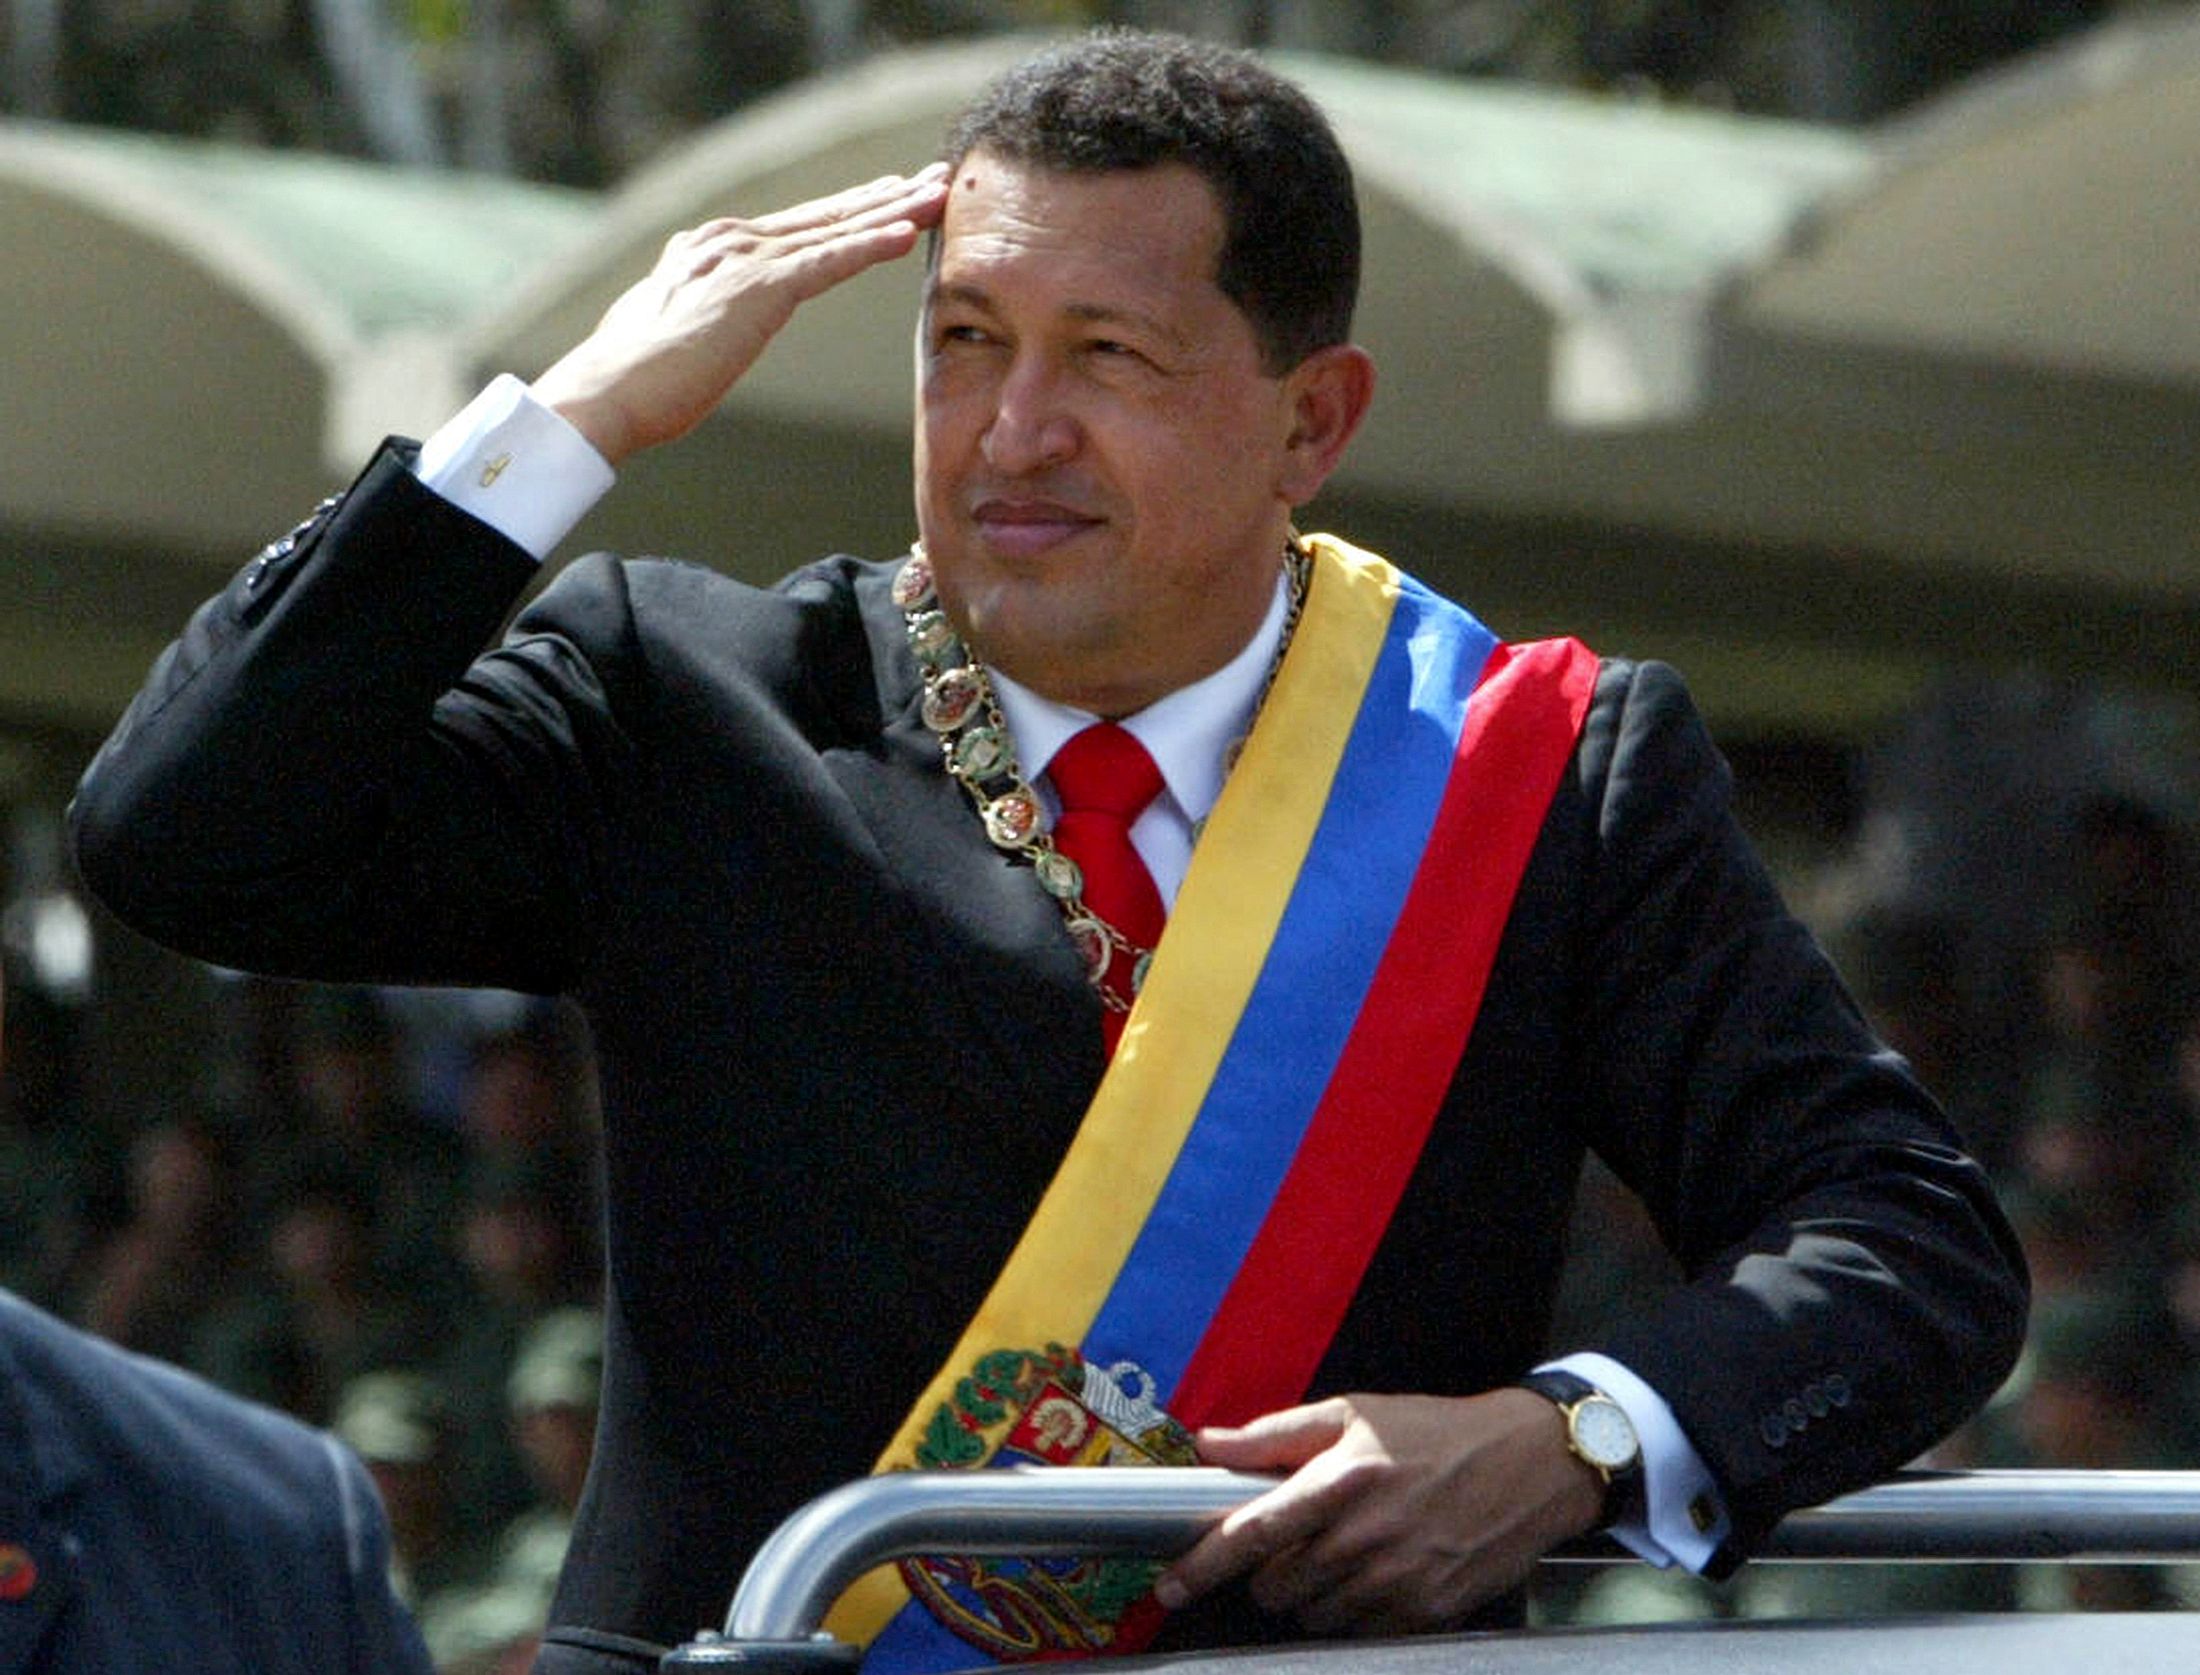 Con la muerte de Hugo Chávez el poder paso a manos de Nicolás Maduro, que enfrenta una serie de problemas y críticas internacionales. (Foto Prensa Libre: AFP)